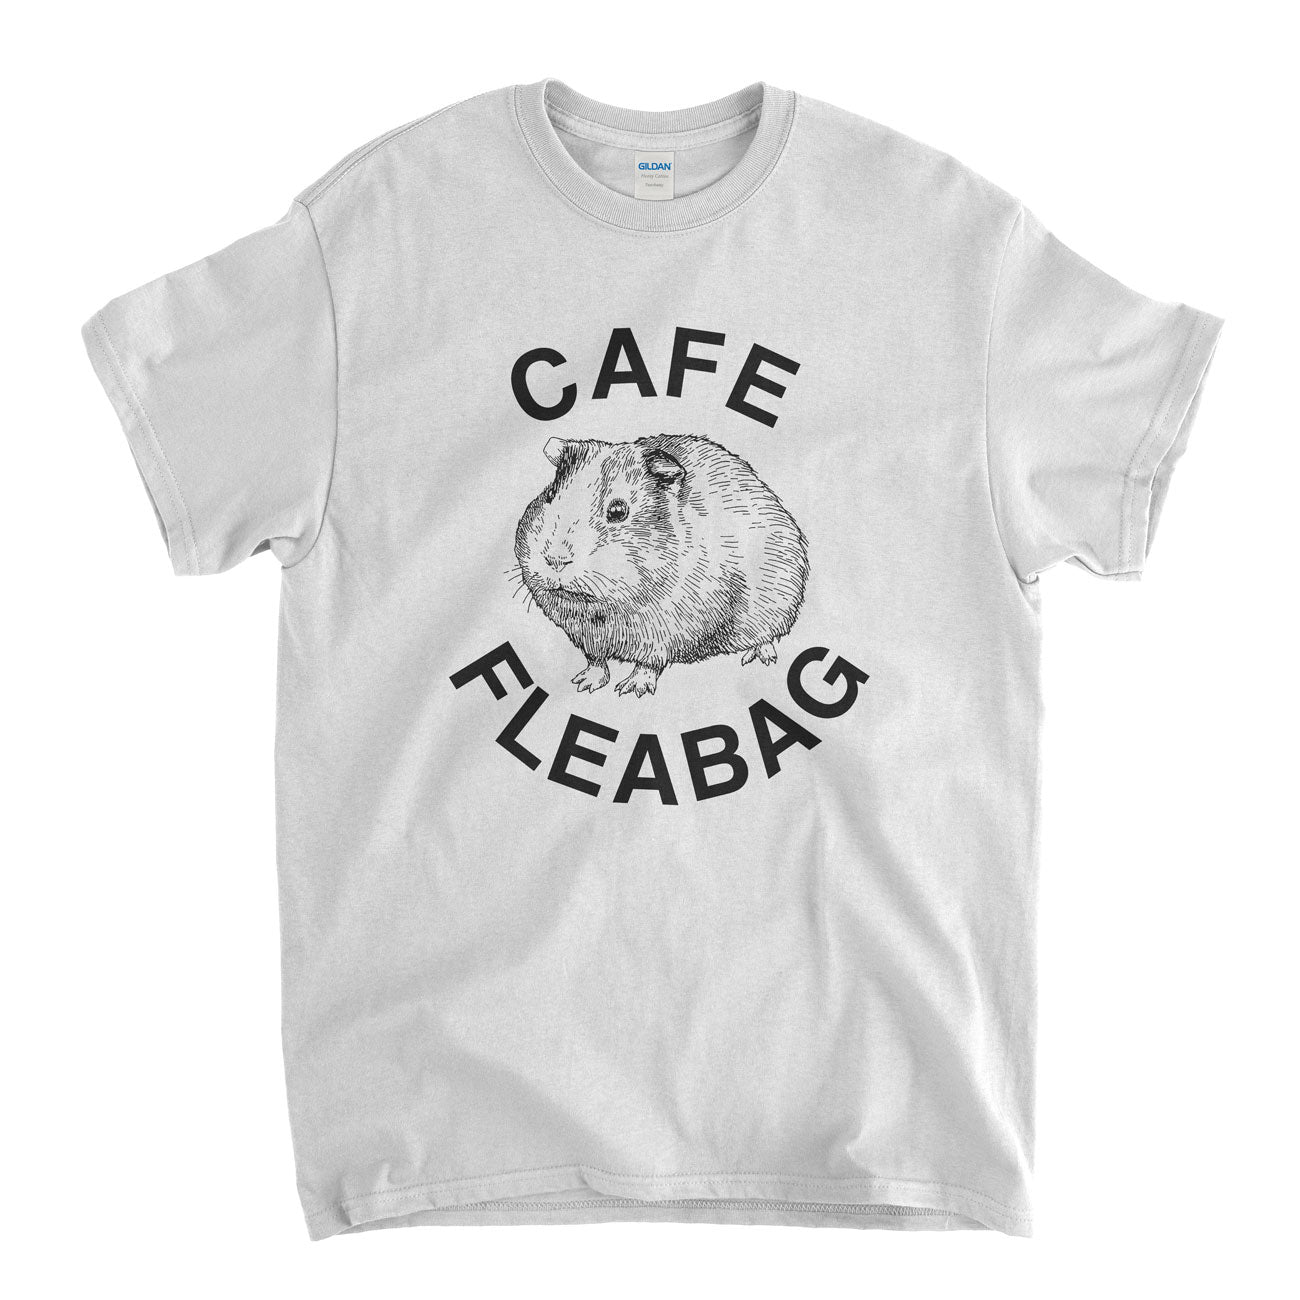 Cafe Fleabag T shirt - Guinea Pig Café Old Skool Hooligans